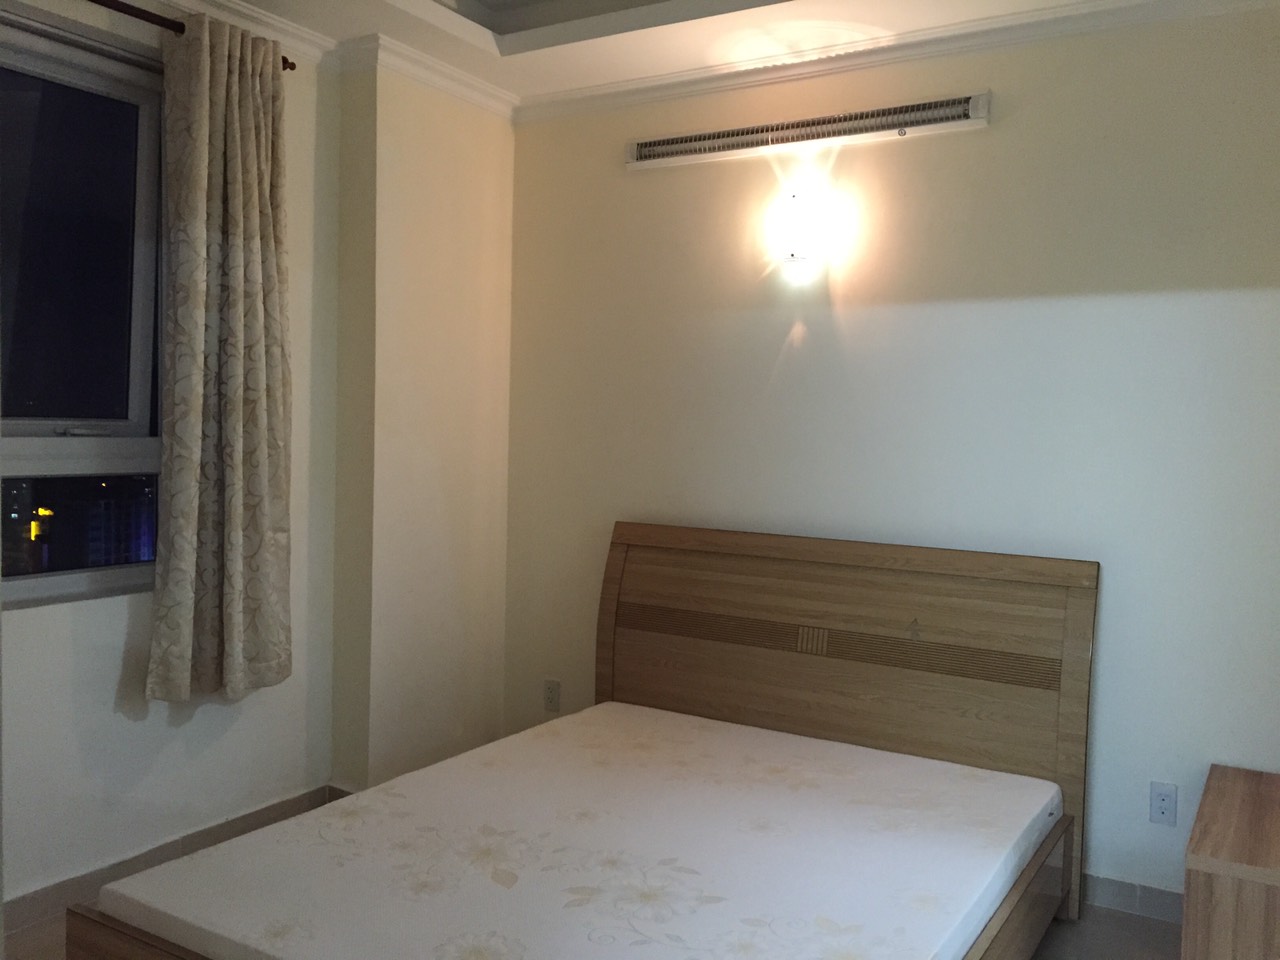 Cho thuê căn hộ Tân Phước 2 phòng ngủ/2WC full tiện nghi y hình #15 Triệu Tel 0932.70.90.98 A.Lộc (Zalo/Viber/Phone) đi xem thực tế nhiều căn hộ